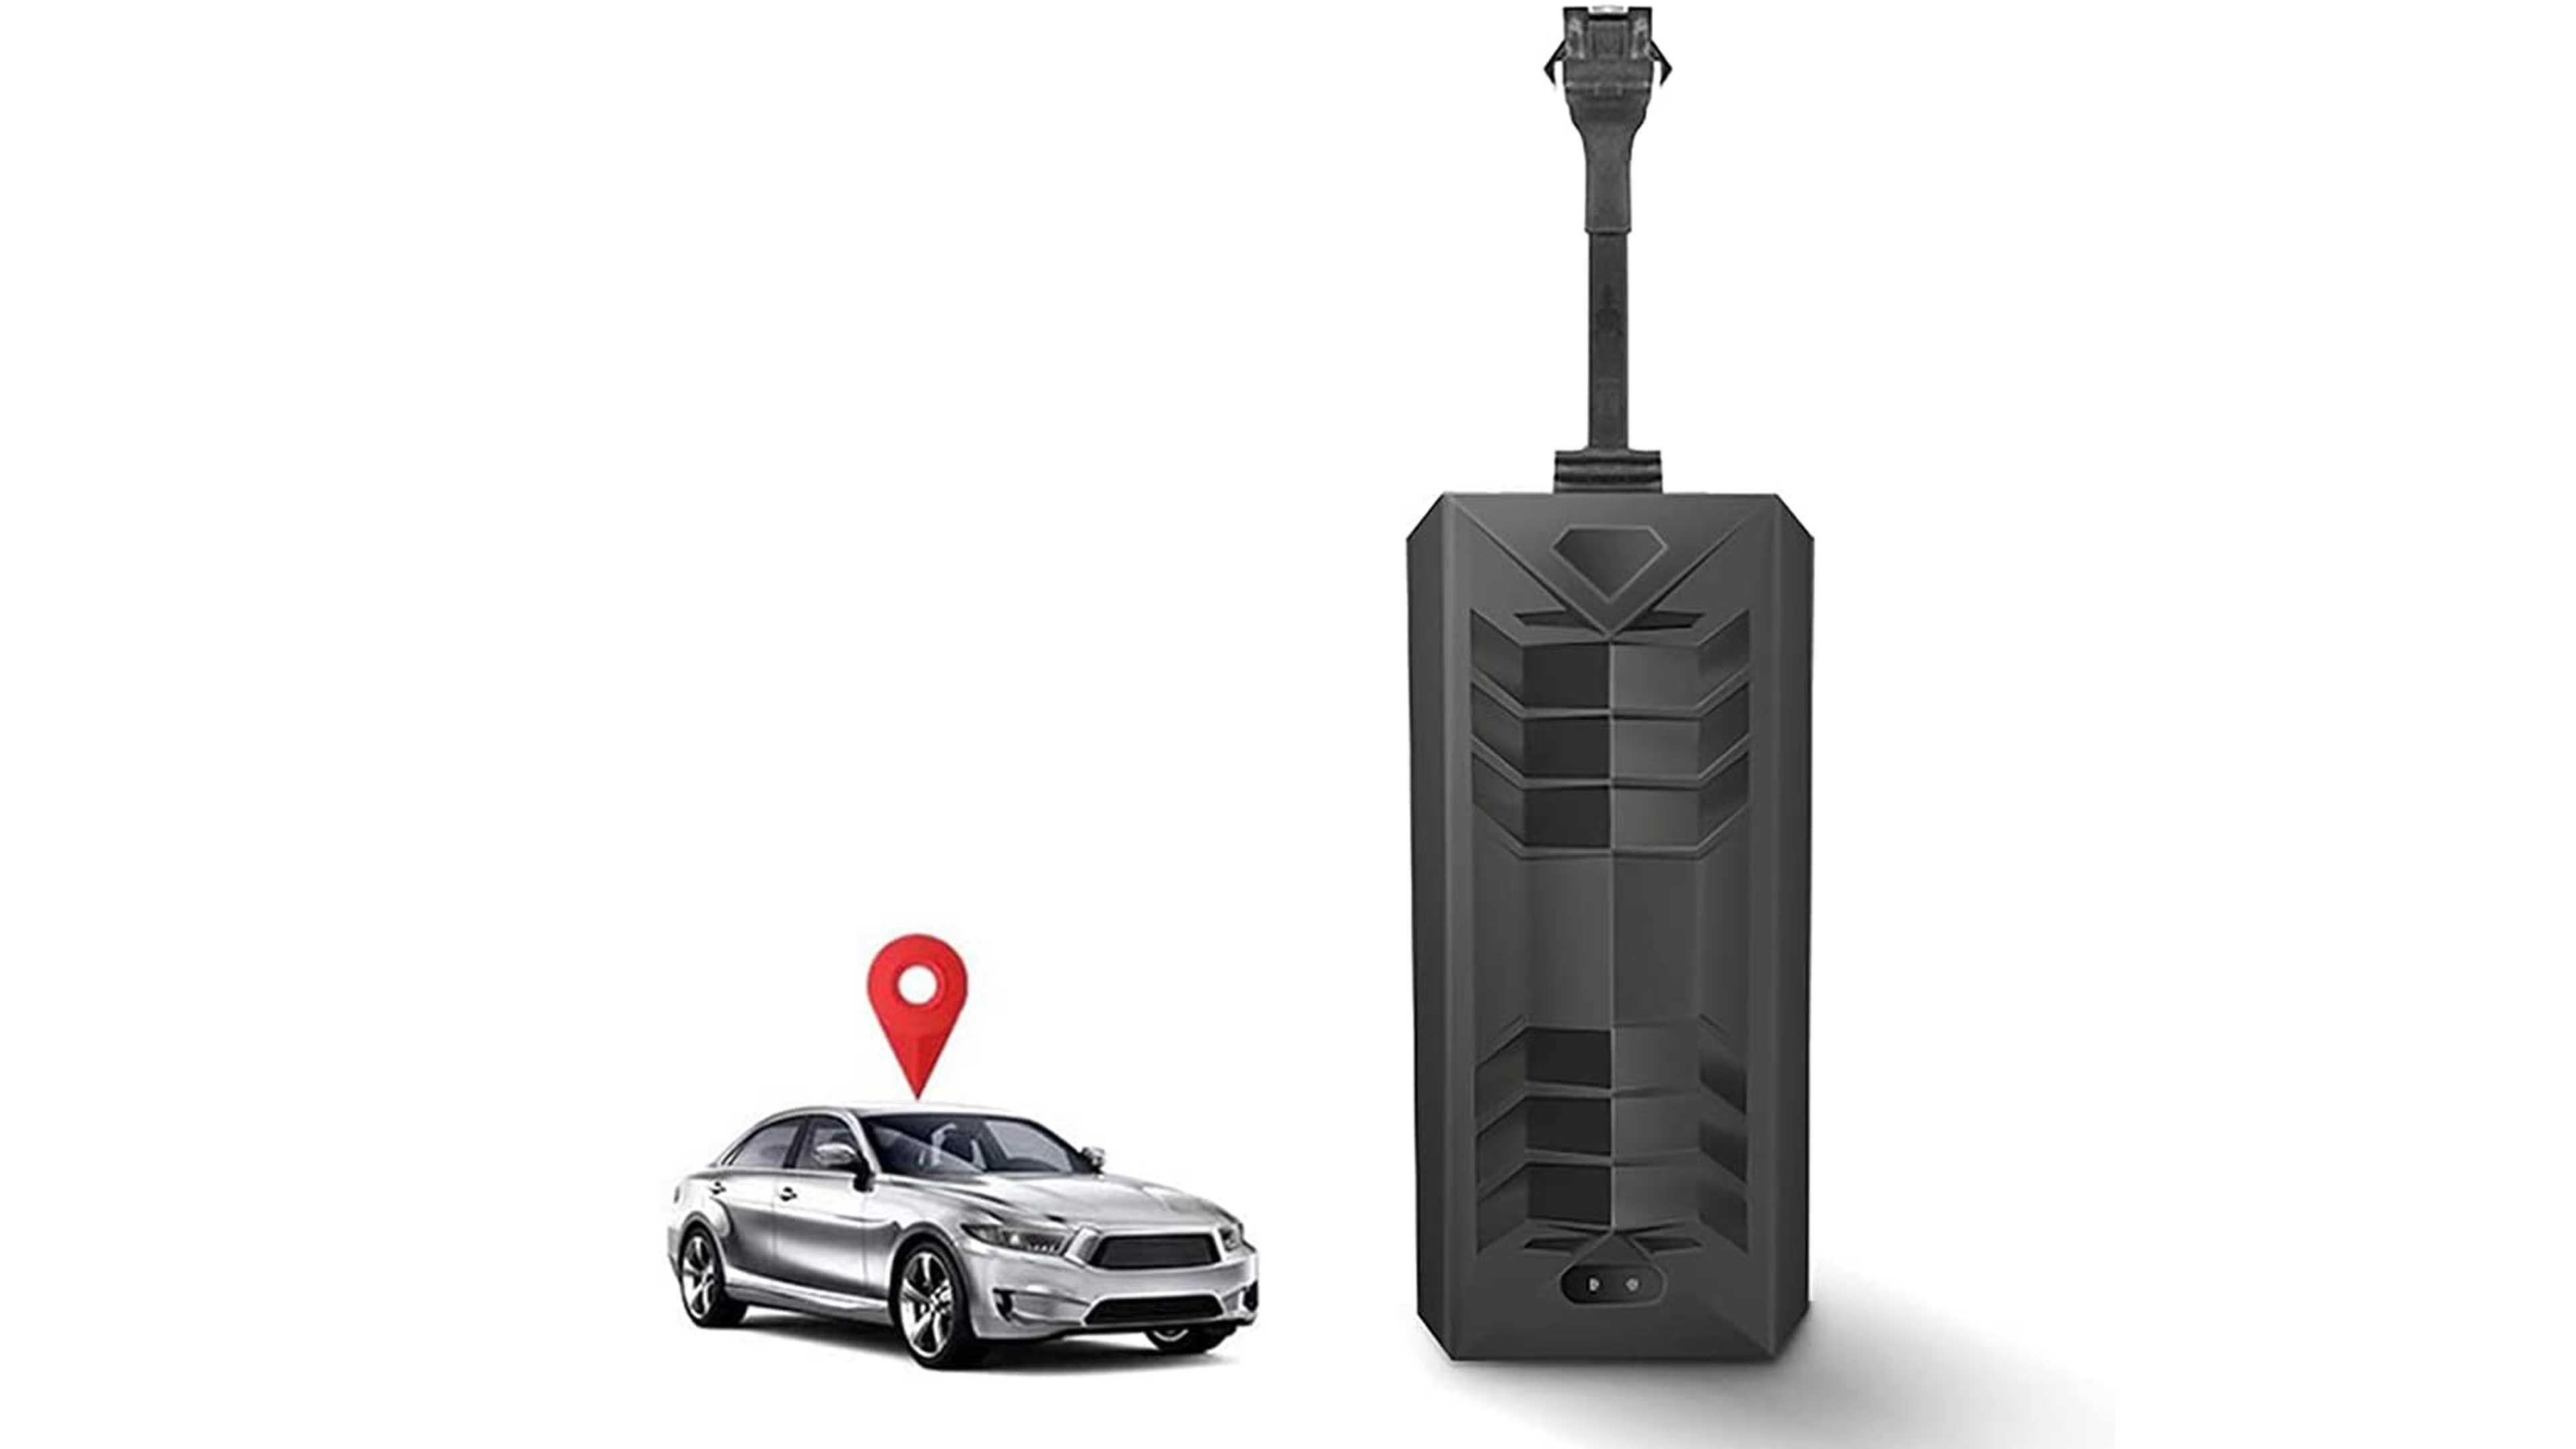 Este localizador GPS te da todos los datos (incluso mecánicos) de tu coche  en tu móvil